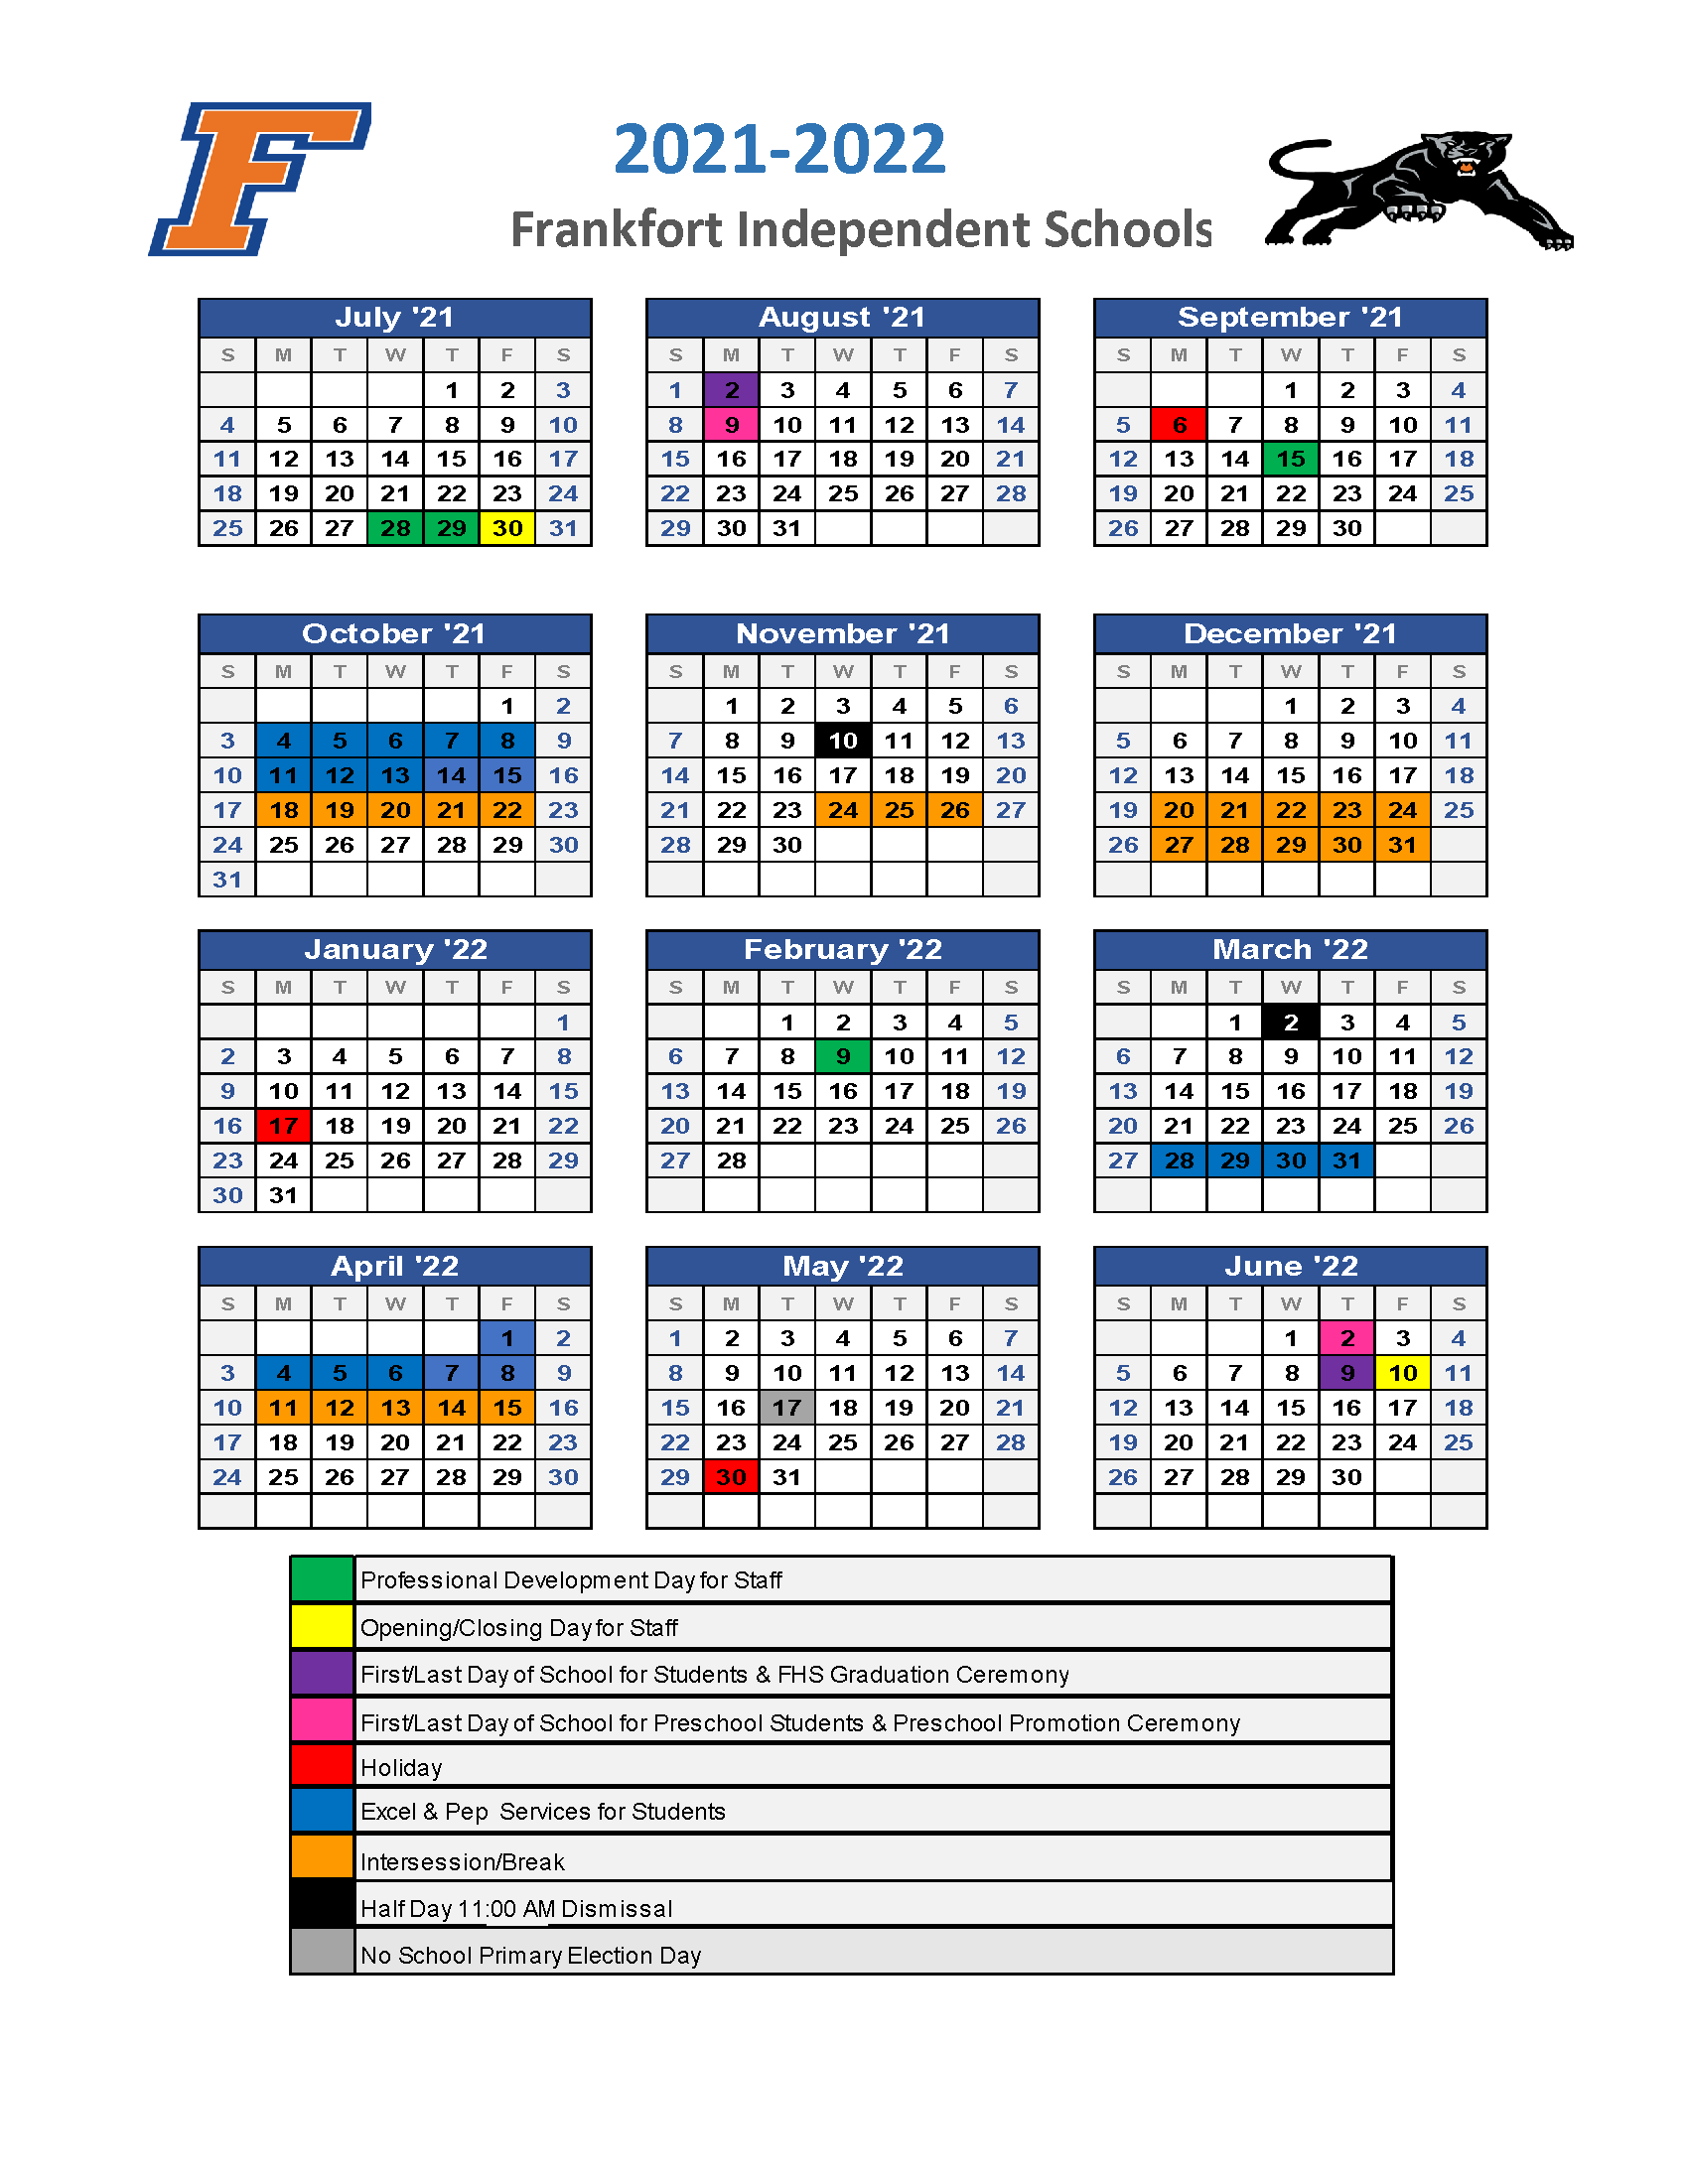 Image iof Calendar for 2021-22